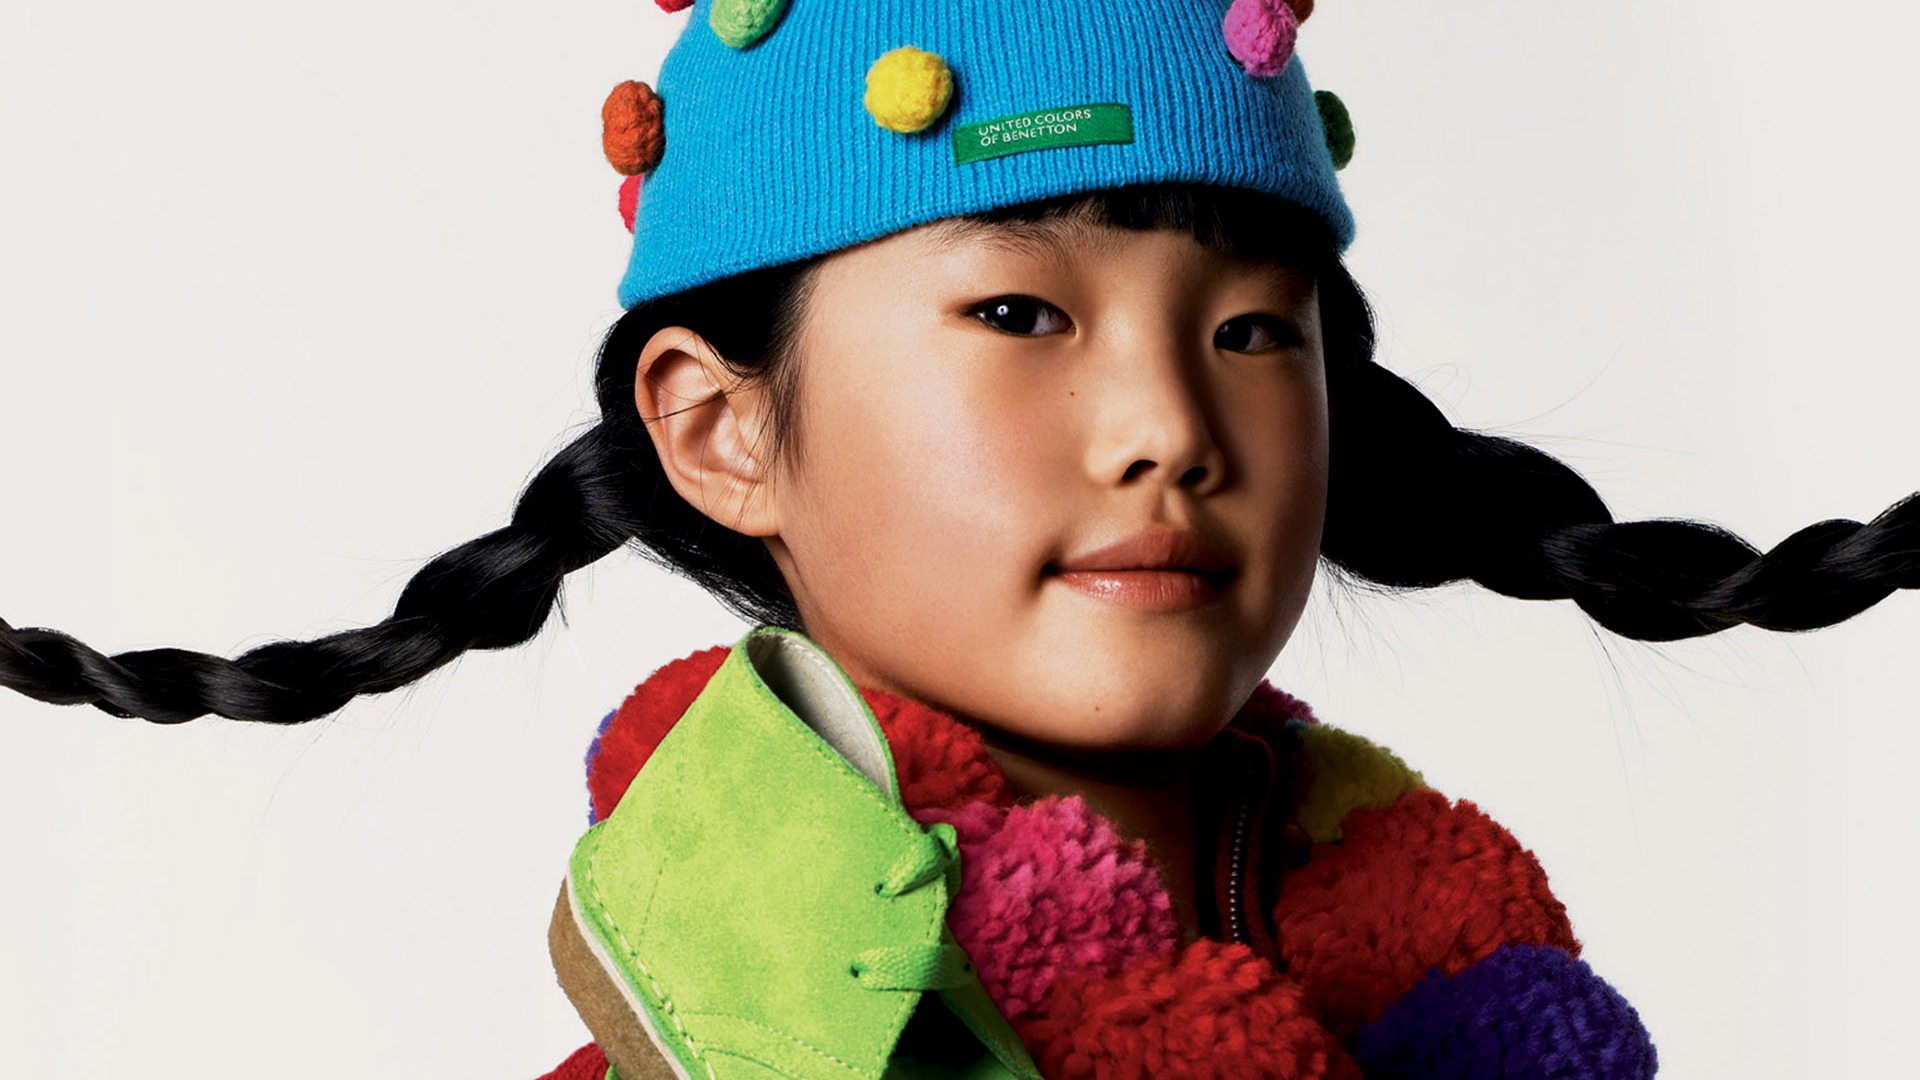 Colorful Children's Fashion Wallpaper (3) #6 - 1920x1080